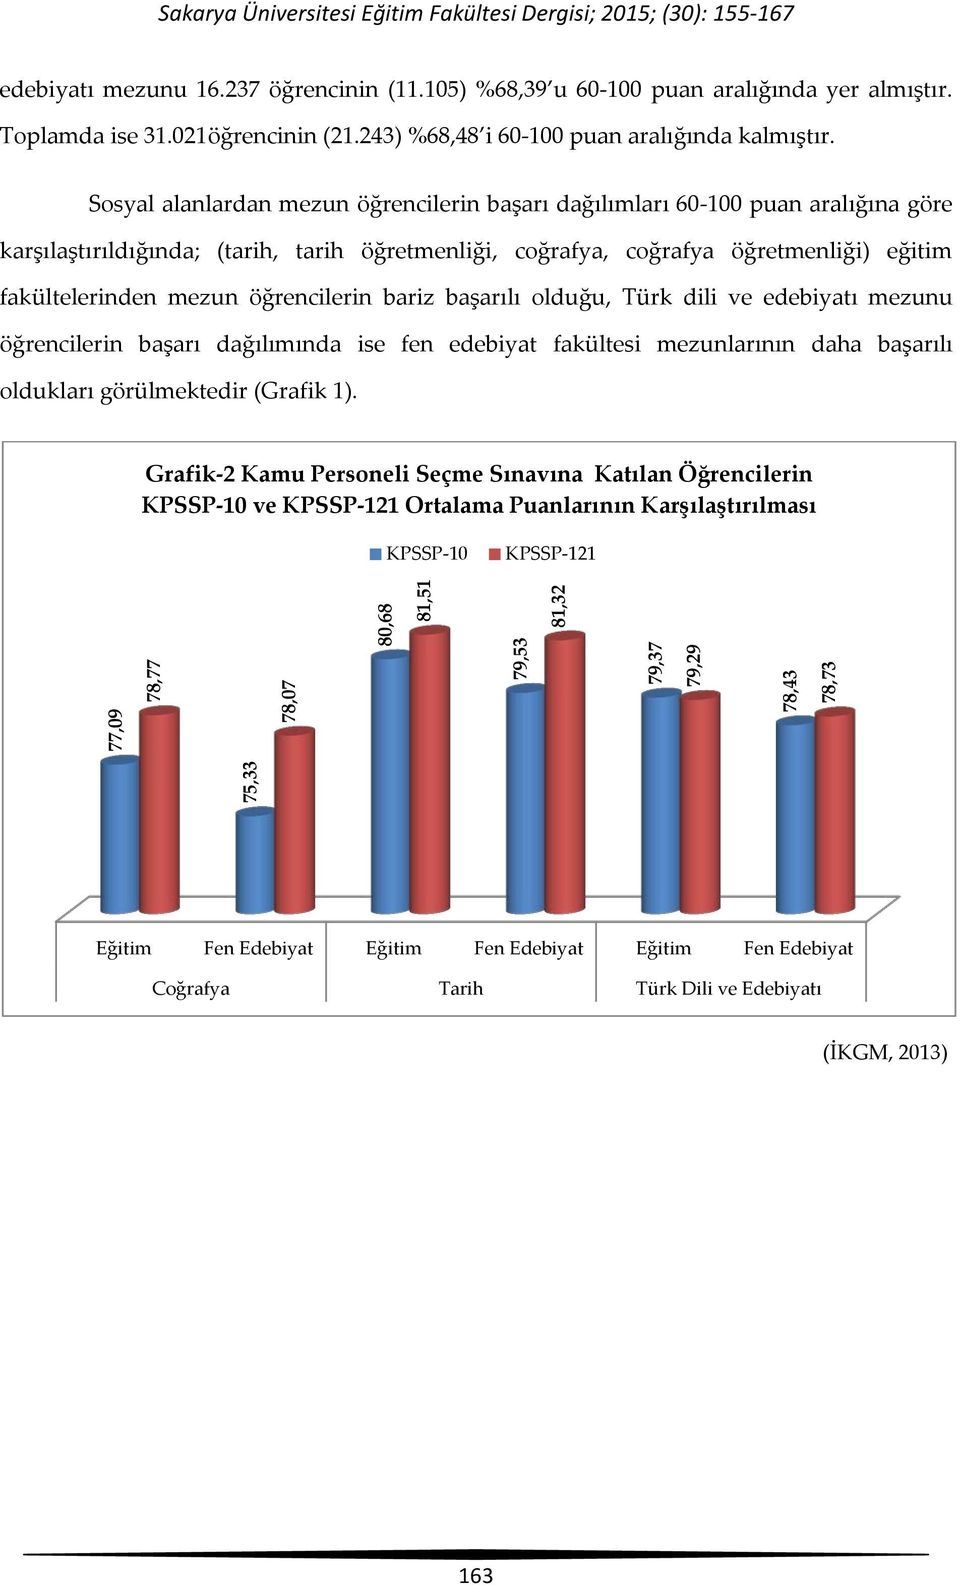 öğrencilerin bariz başarılı olduğu, Türk dili ve edebiyatı mezunu öğrencilerin başarı dağılımında ise fen edebiyat fakültesi mezunlarının daha başarılı oldukları görülmektedir (Grafik 1).